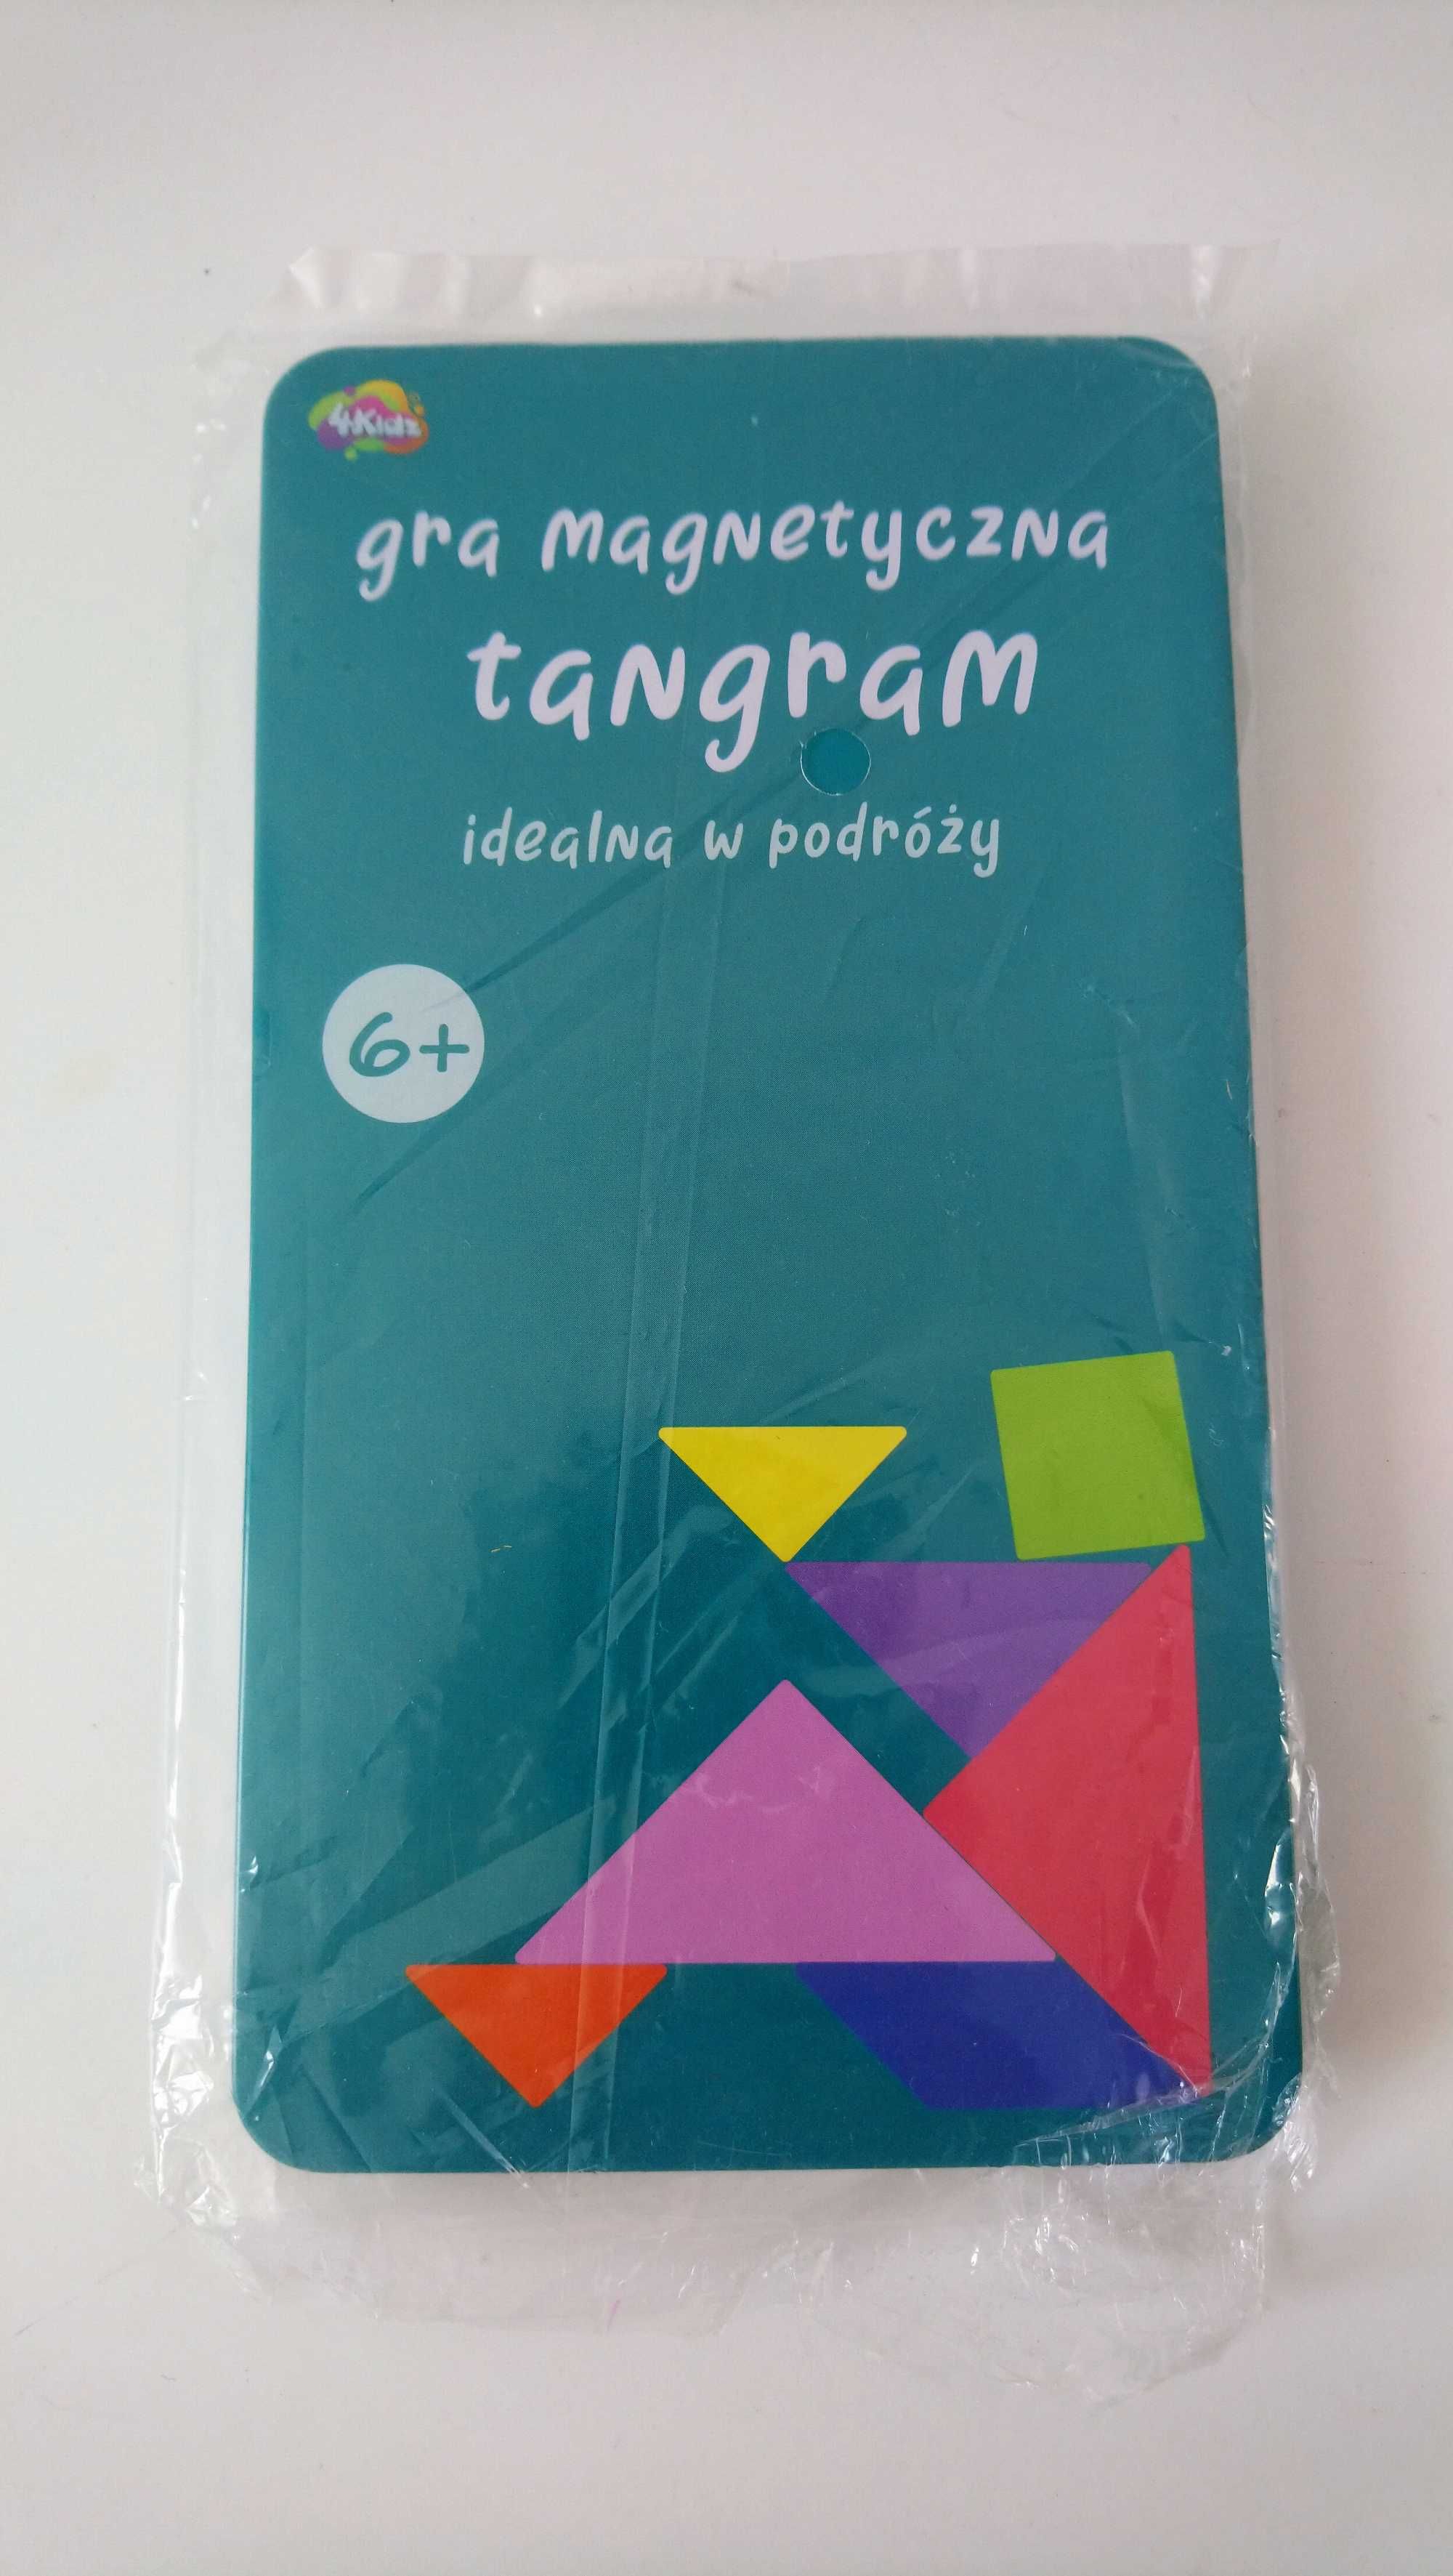 Tangram gra magnetyczna idealna w podróży logiczna